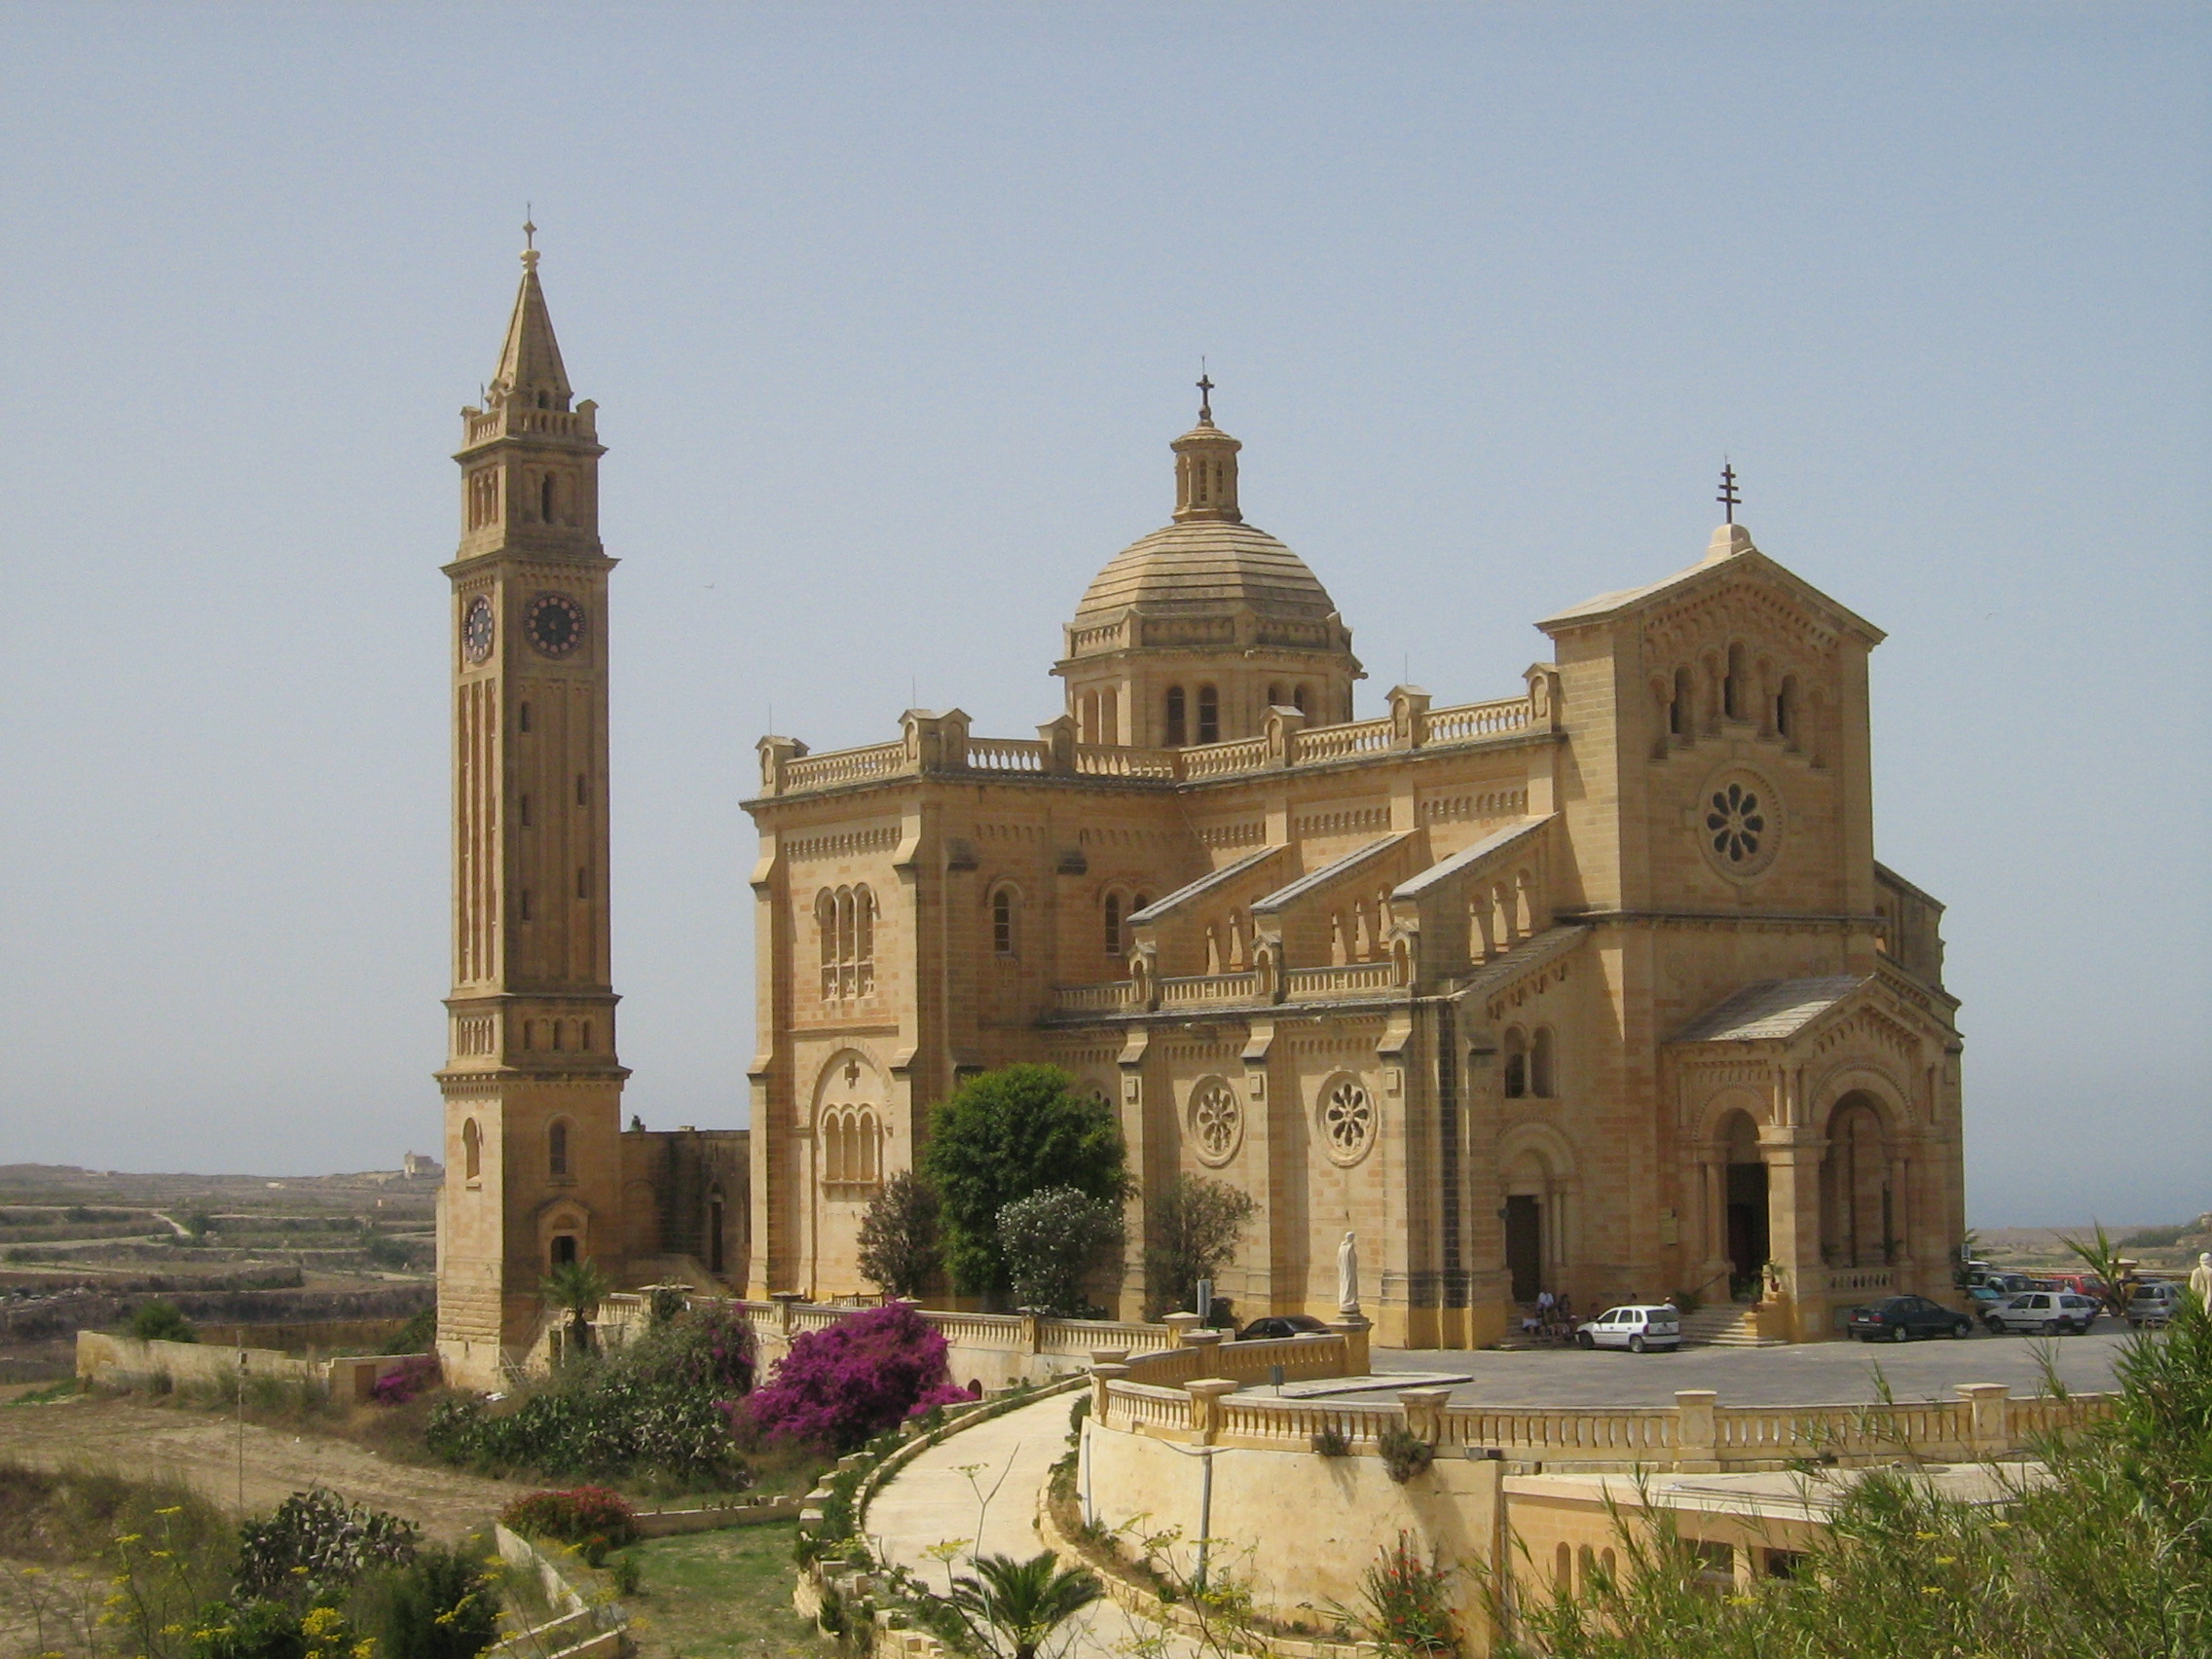 Malta Island Church